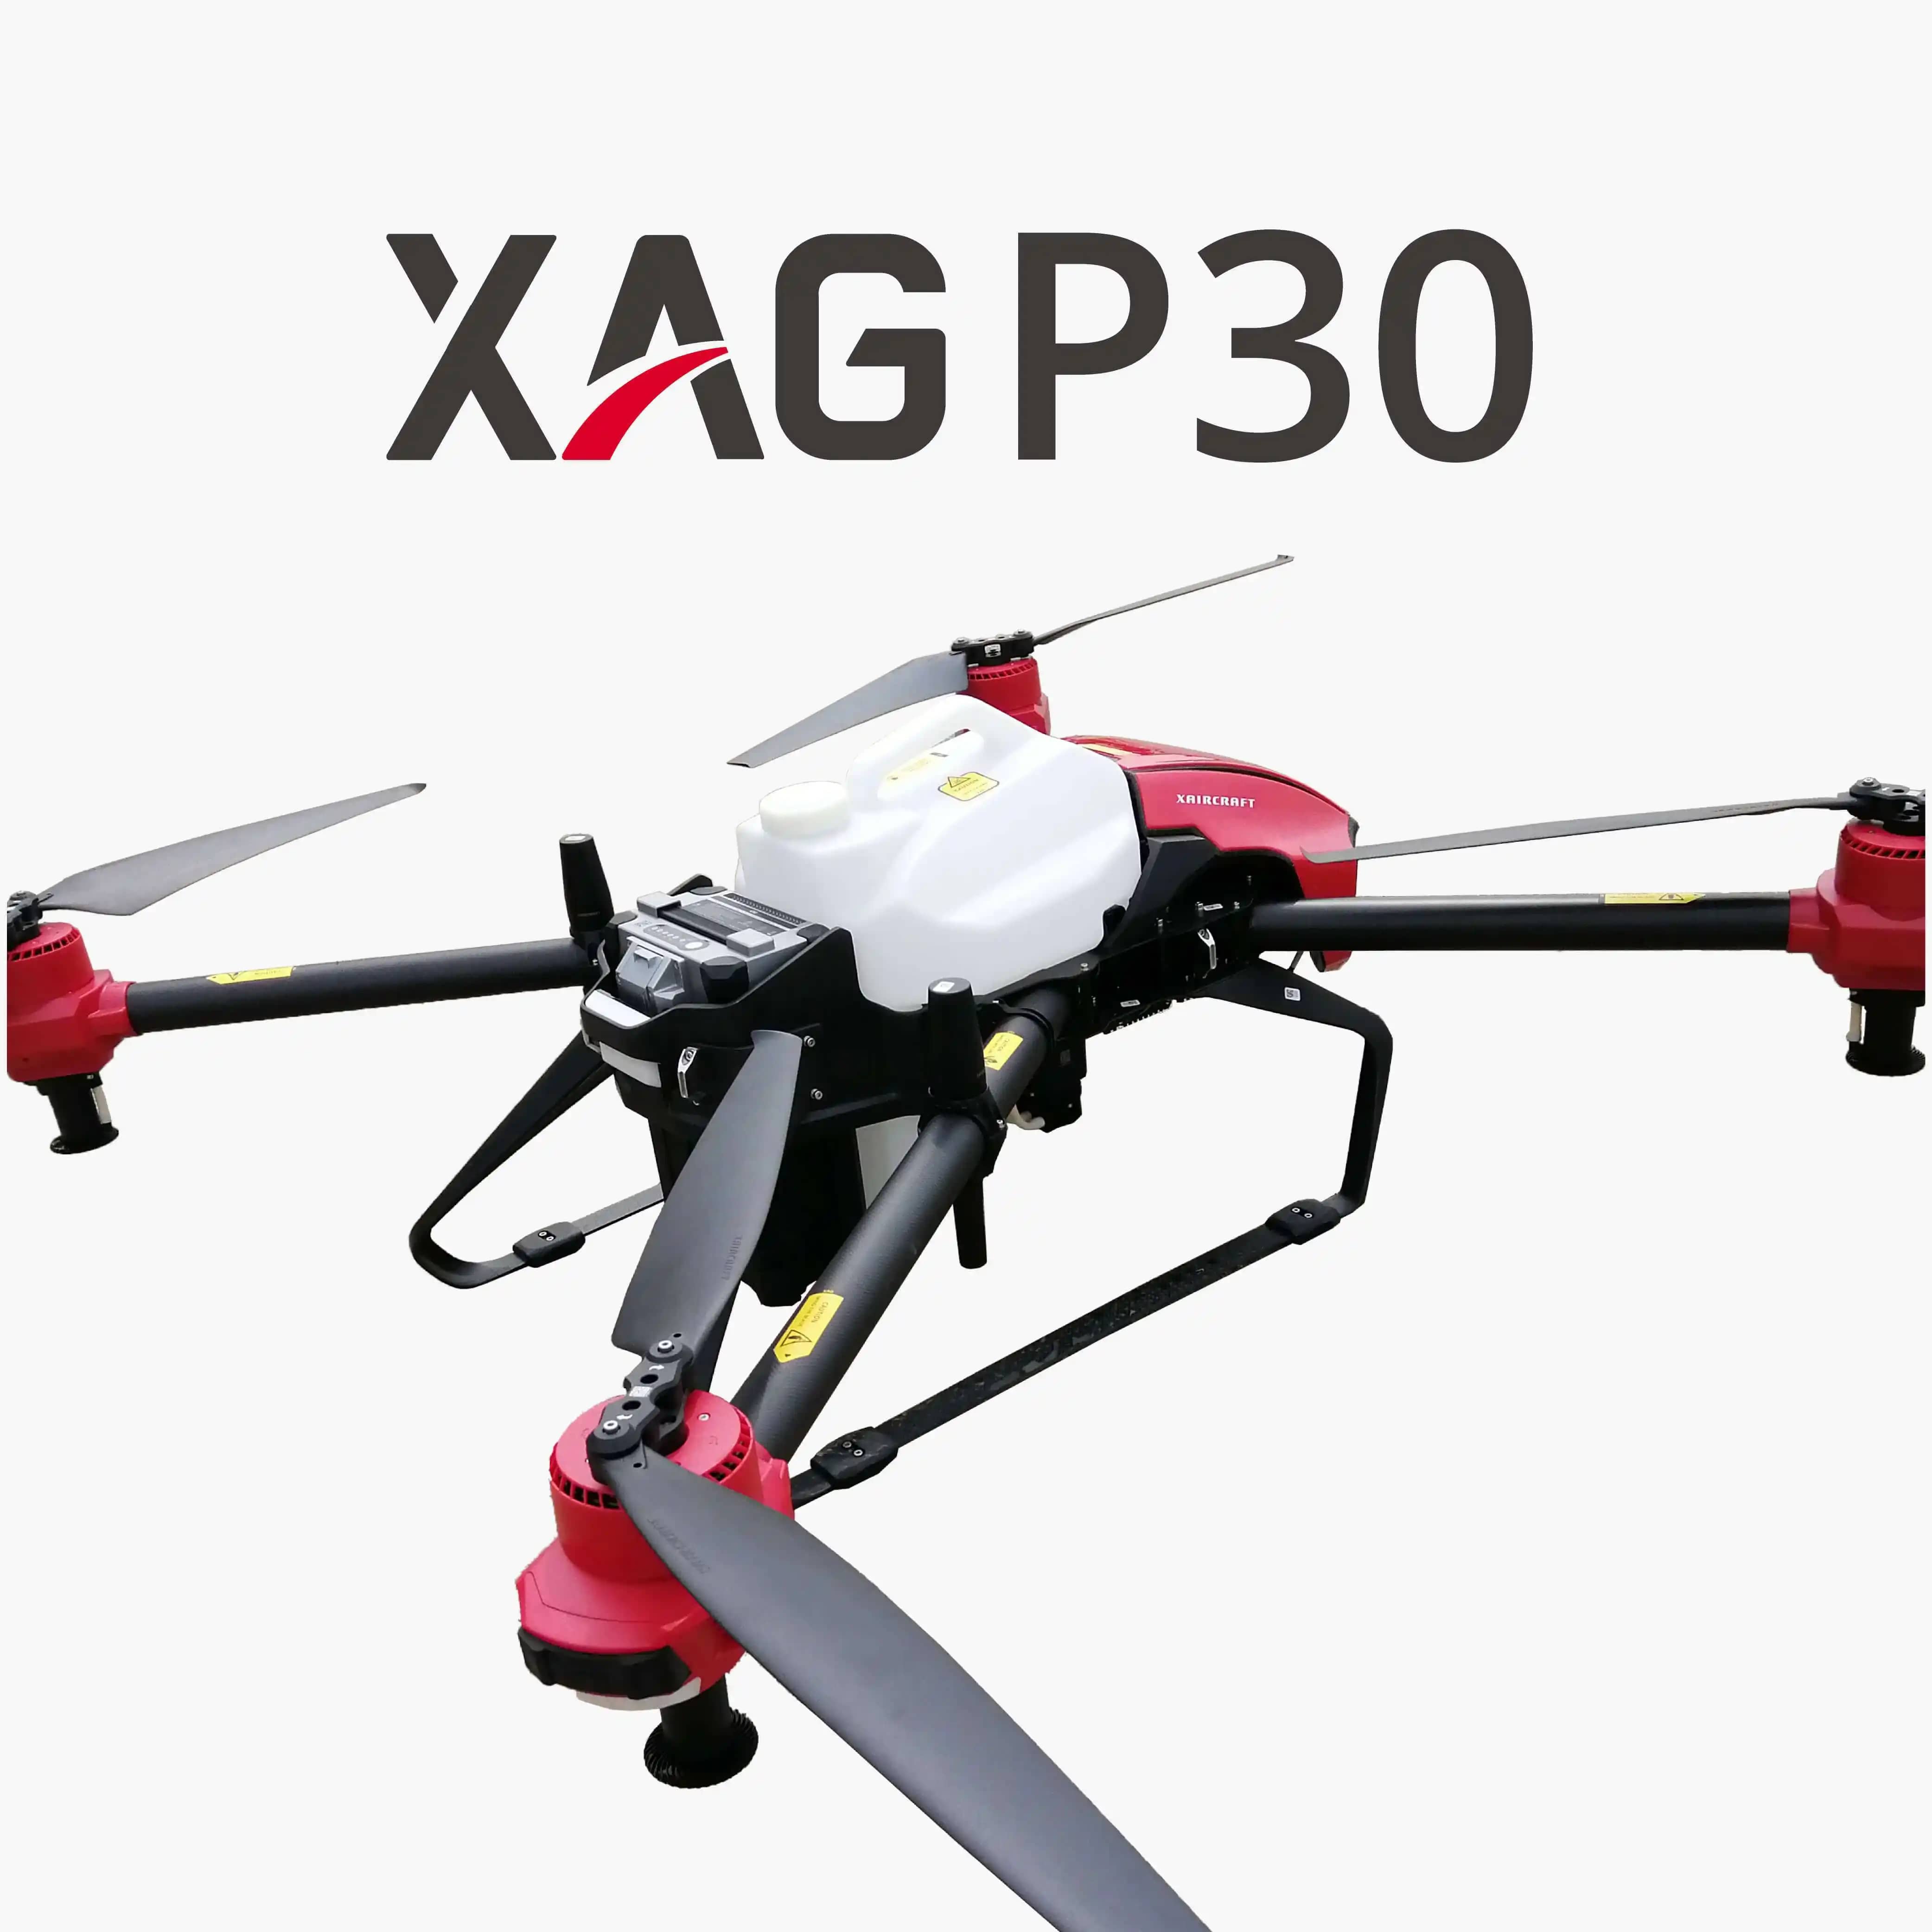 Dron Fumigador XAG P30 - Duwest Colombia S.A.S